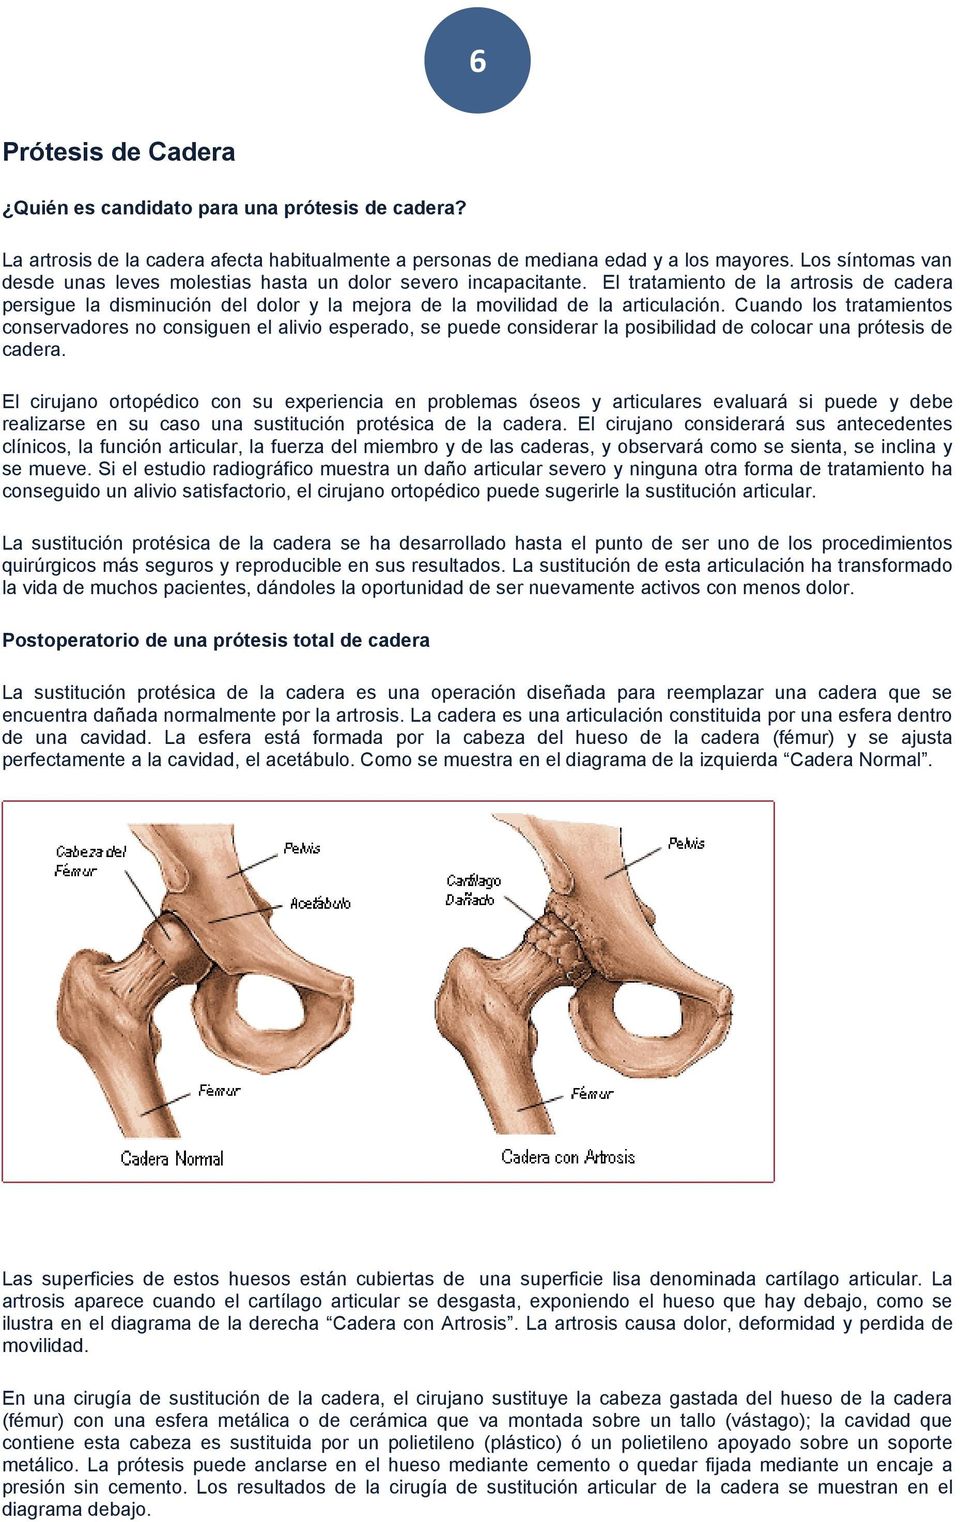 El tratamiento de la artrosis de cadera persigue la disminución del dolor y la mejora de la movilidad de la articulación.